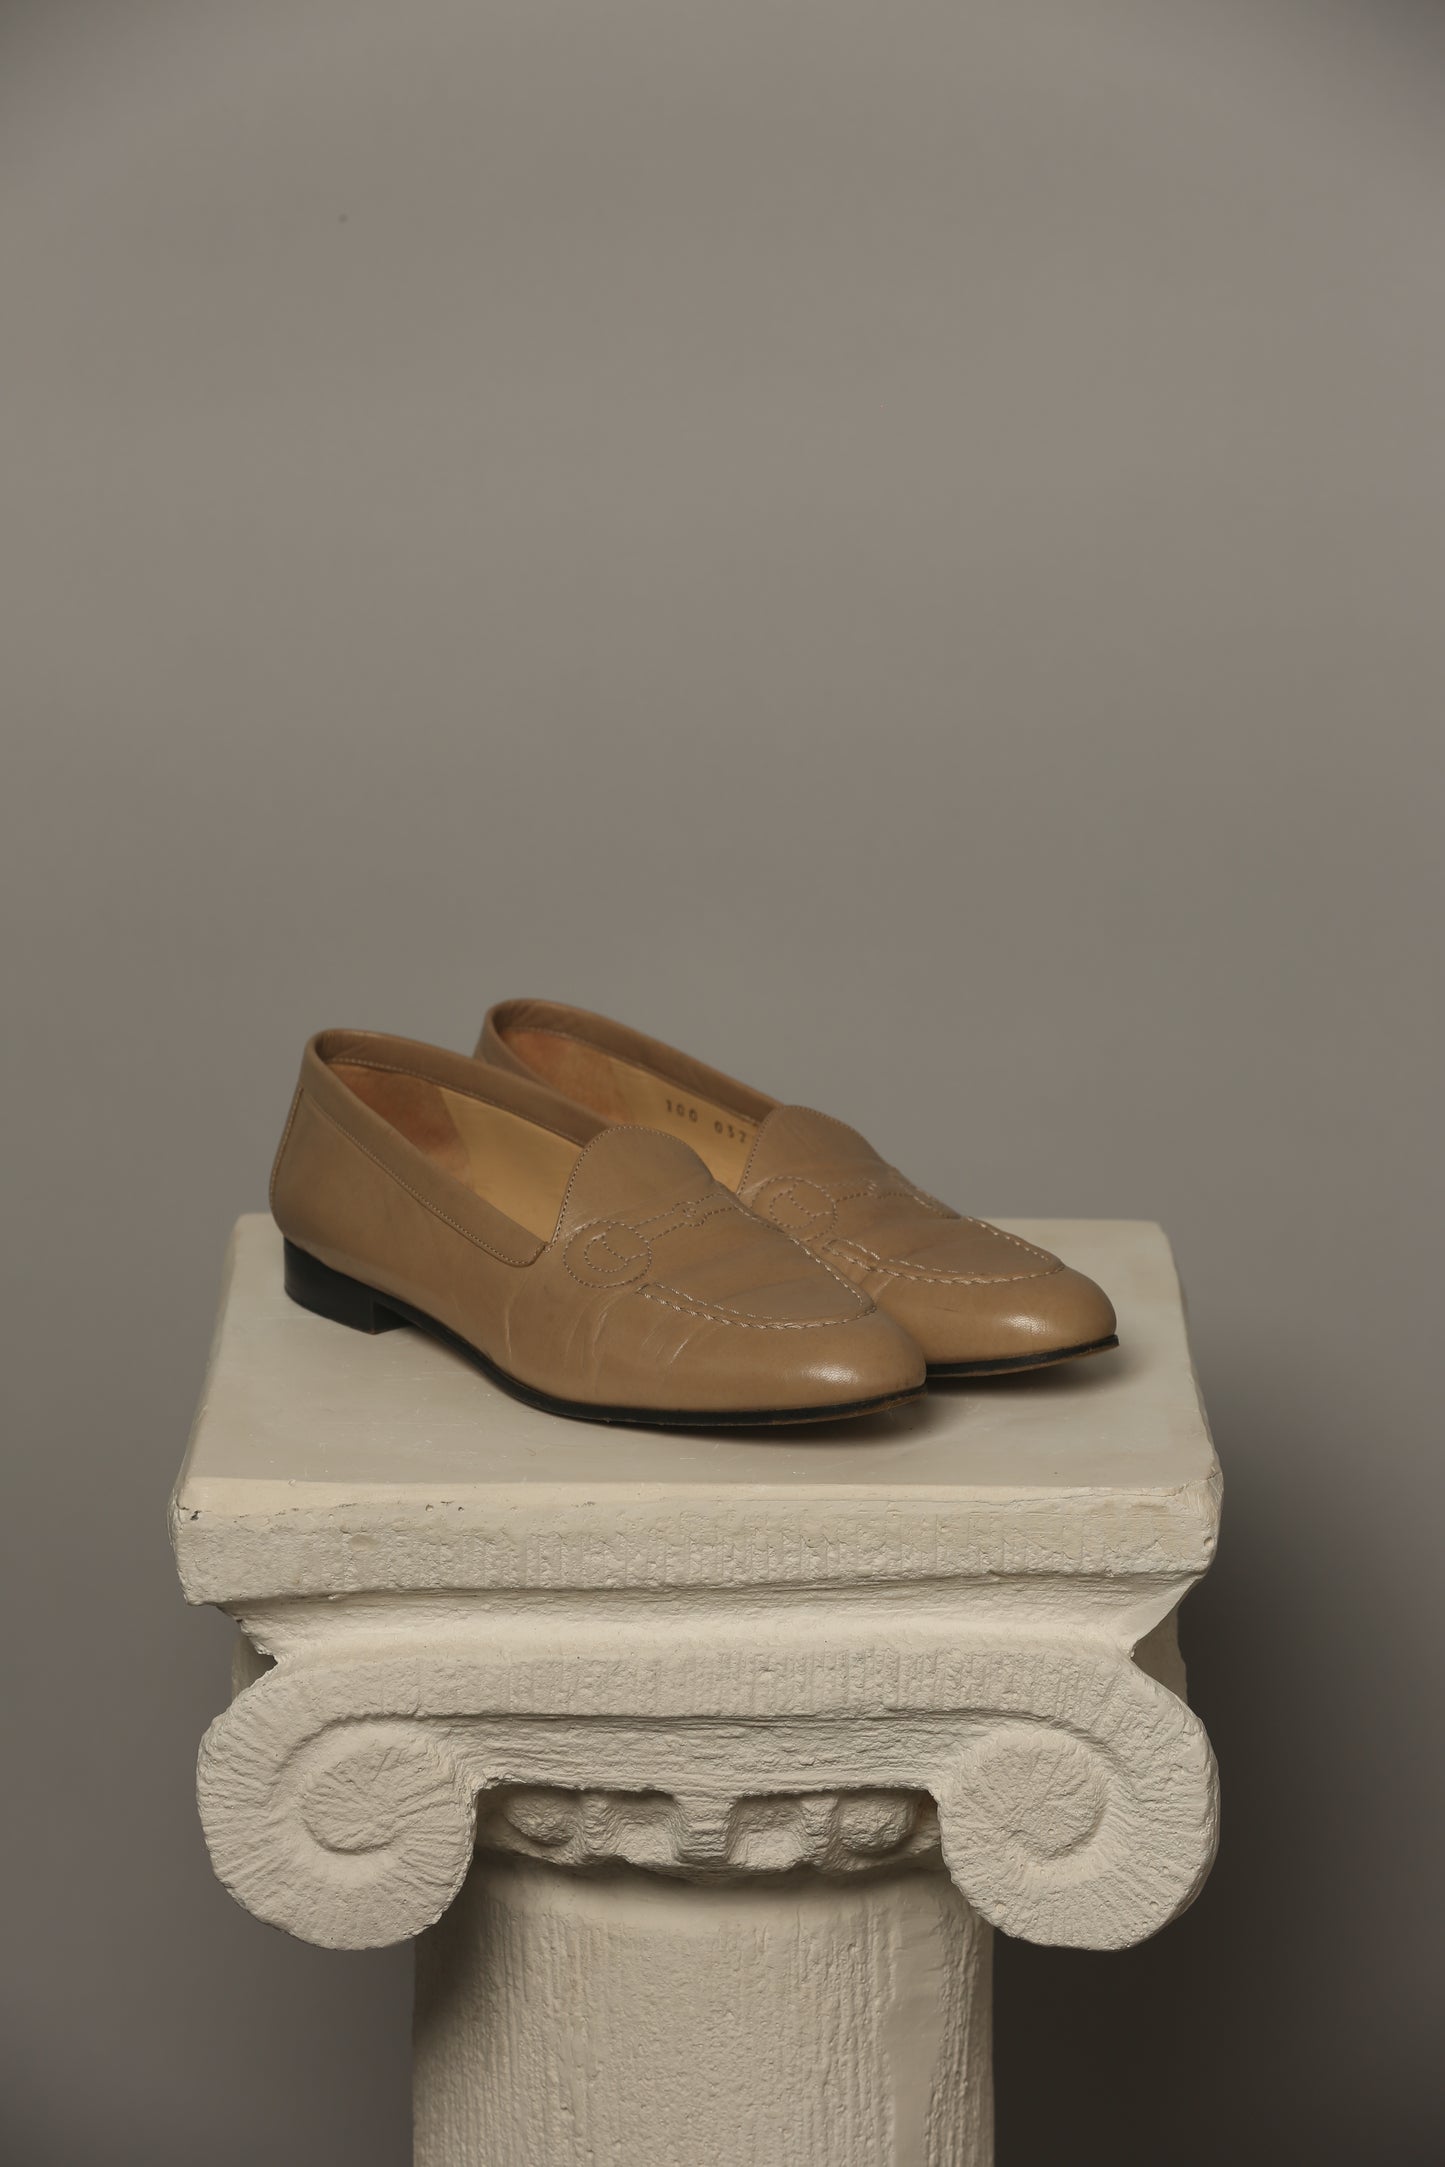 Rare Vintage GUCCI Loafer